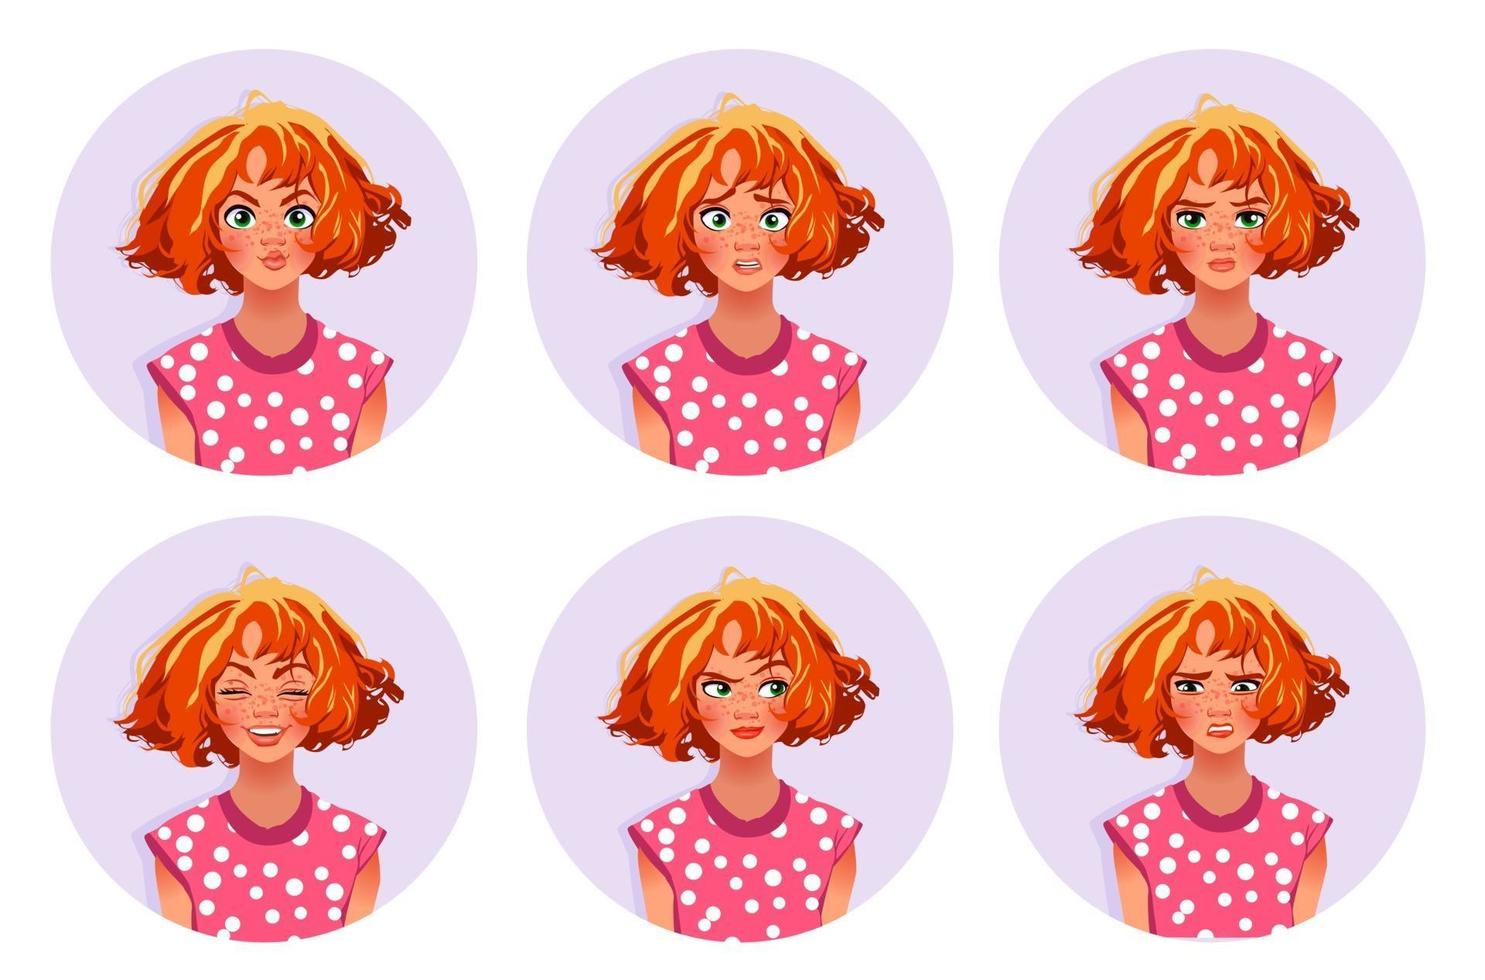 expresiones faciales de mujer linda chica con diversas emociones vector ilustración plana seis caras emocionales para pegatinas en el diseño de personajes de dibujos animados aislado sobre fondo blanco